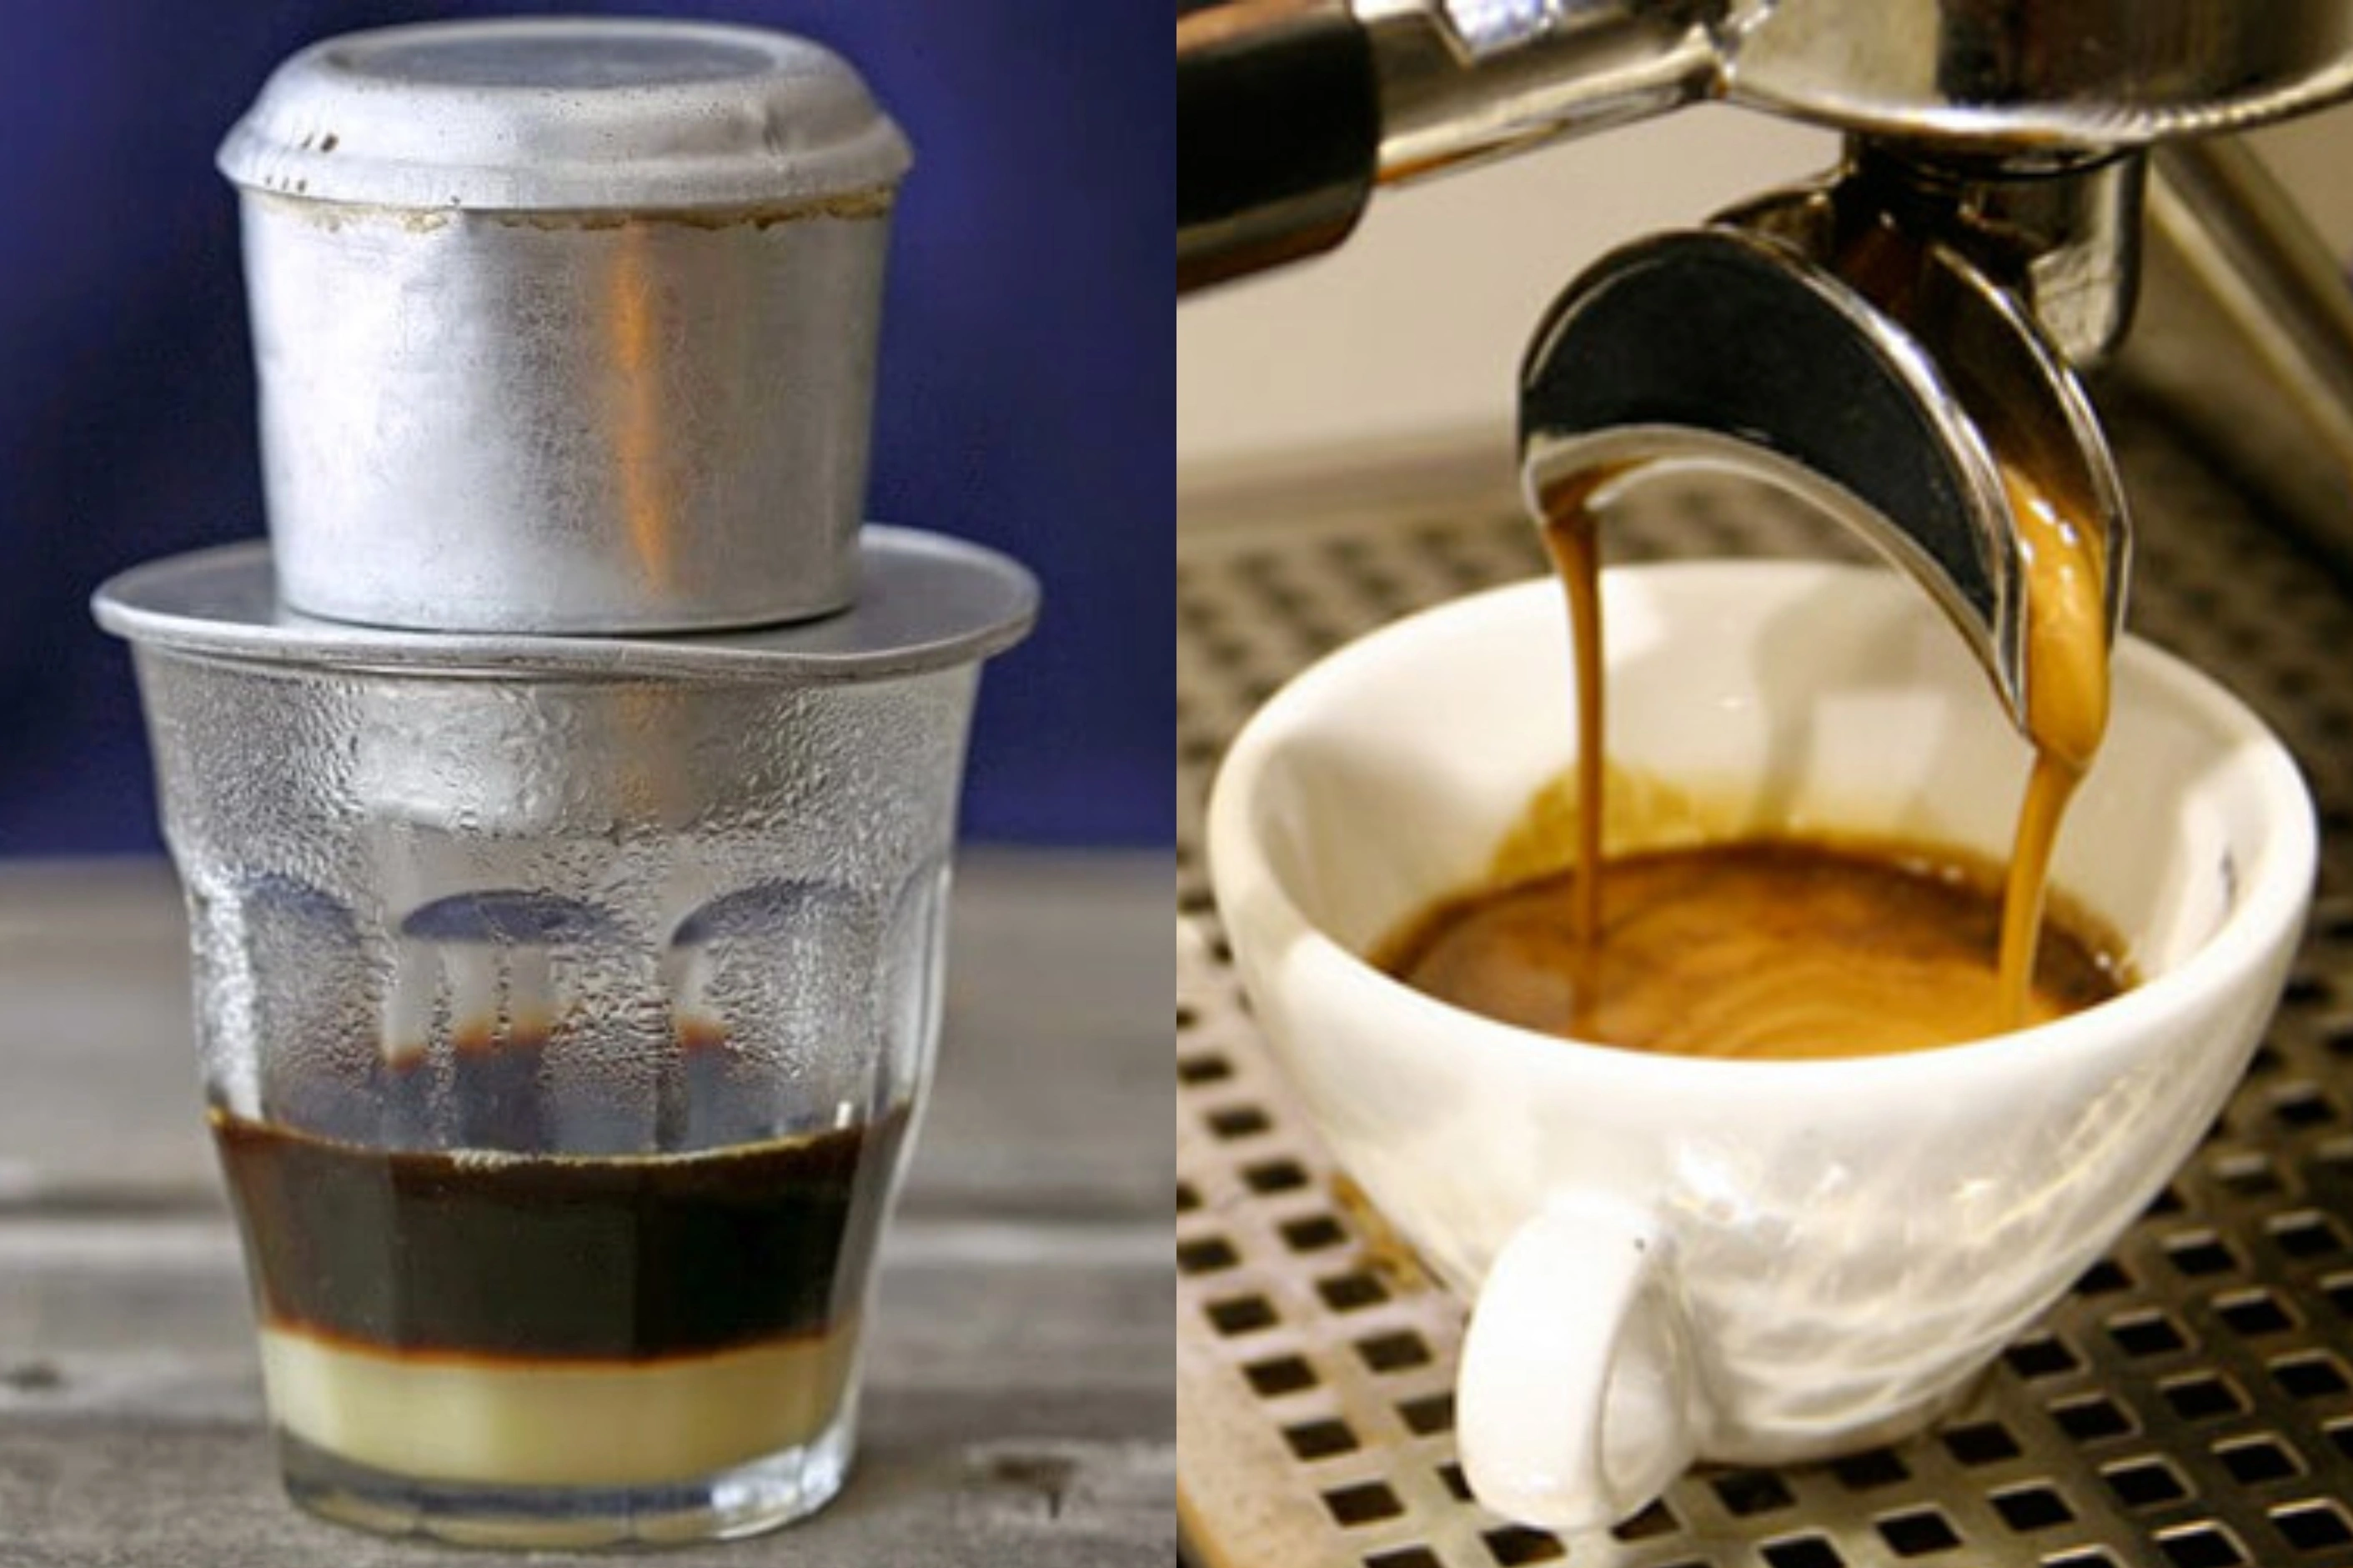 Cà phê phin hay espresso tốt hơn cho sức khỏe? - 1